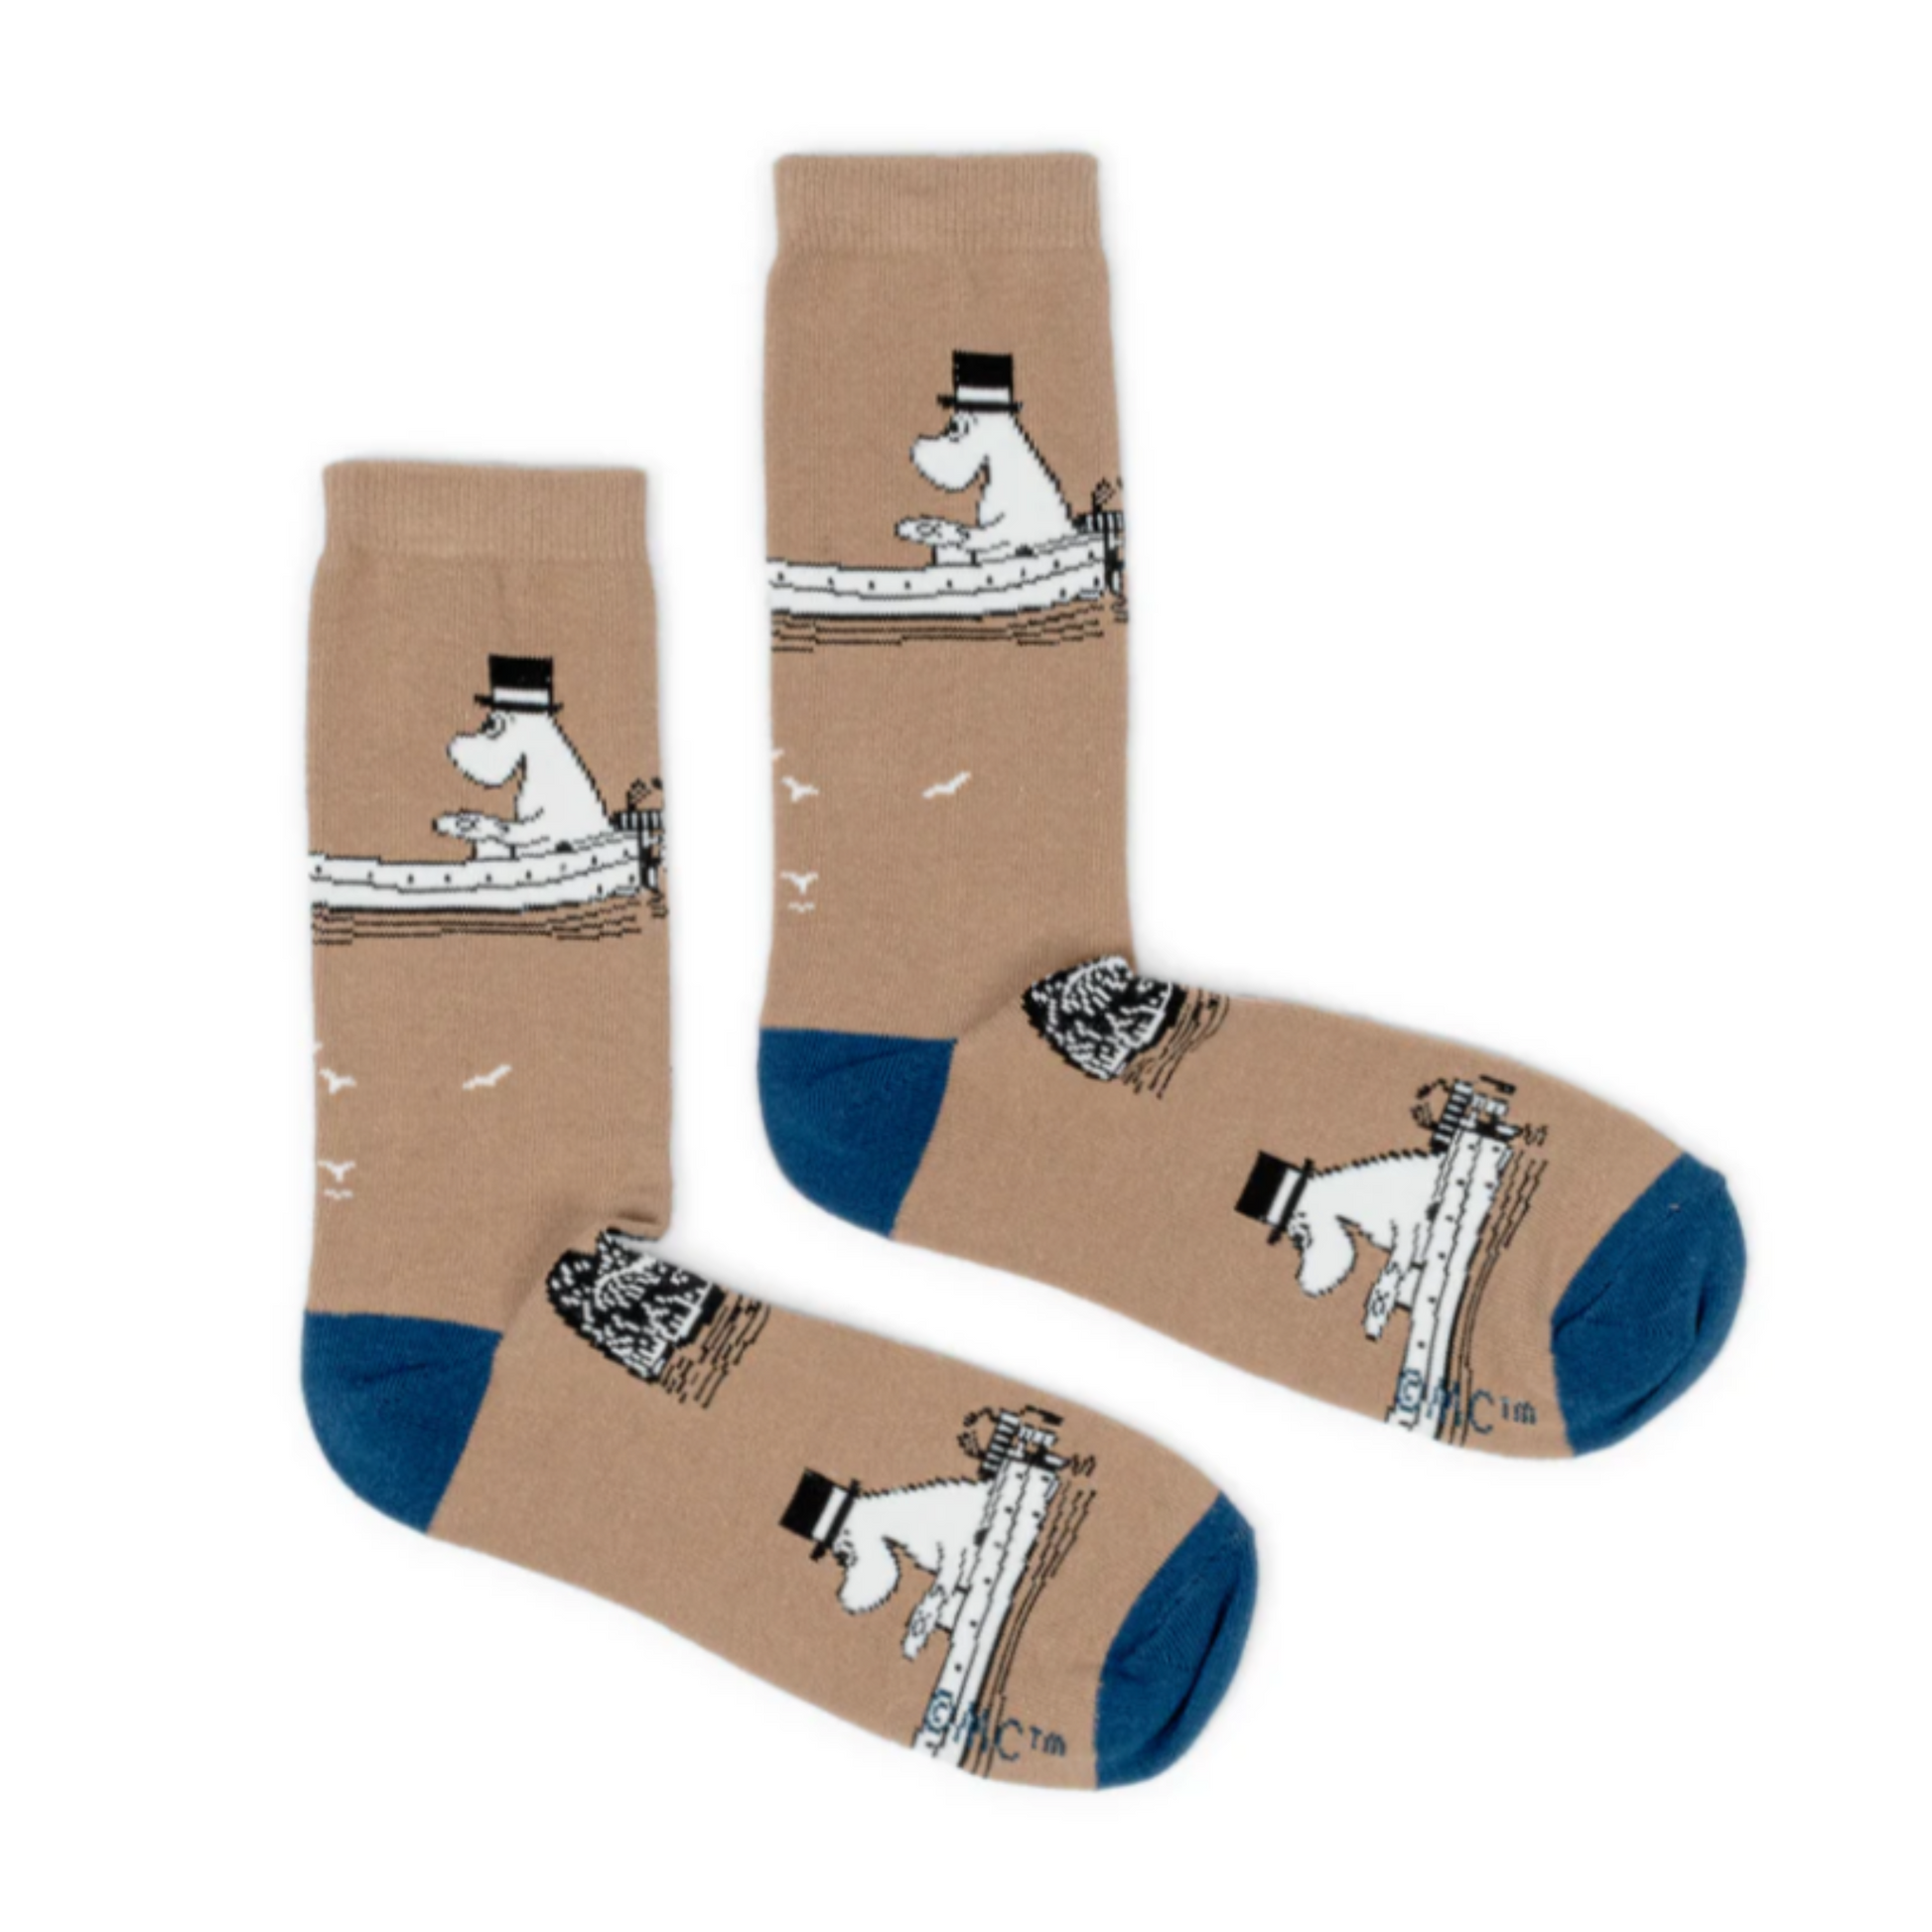 Moominpappa Boating Men Socks, Beige (8351296487711)